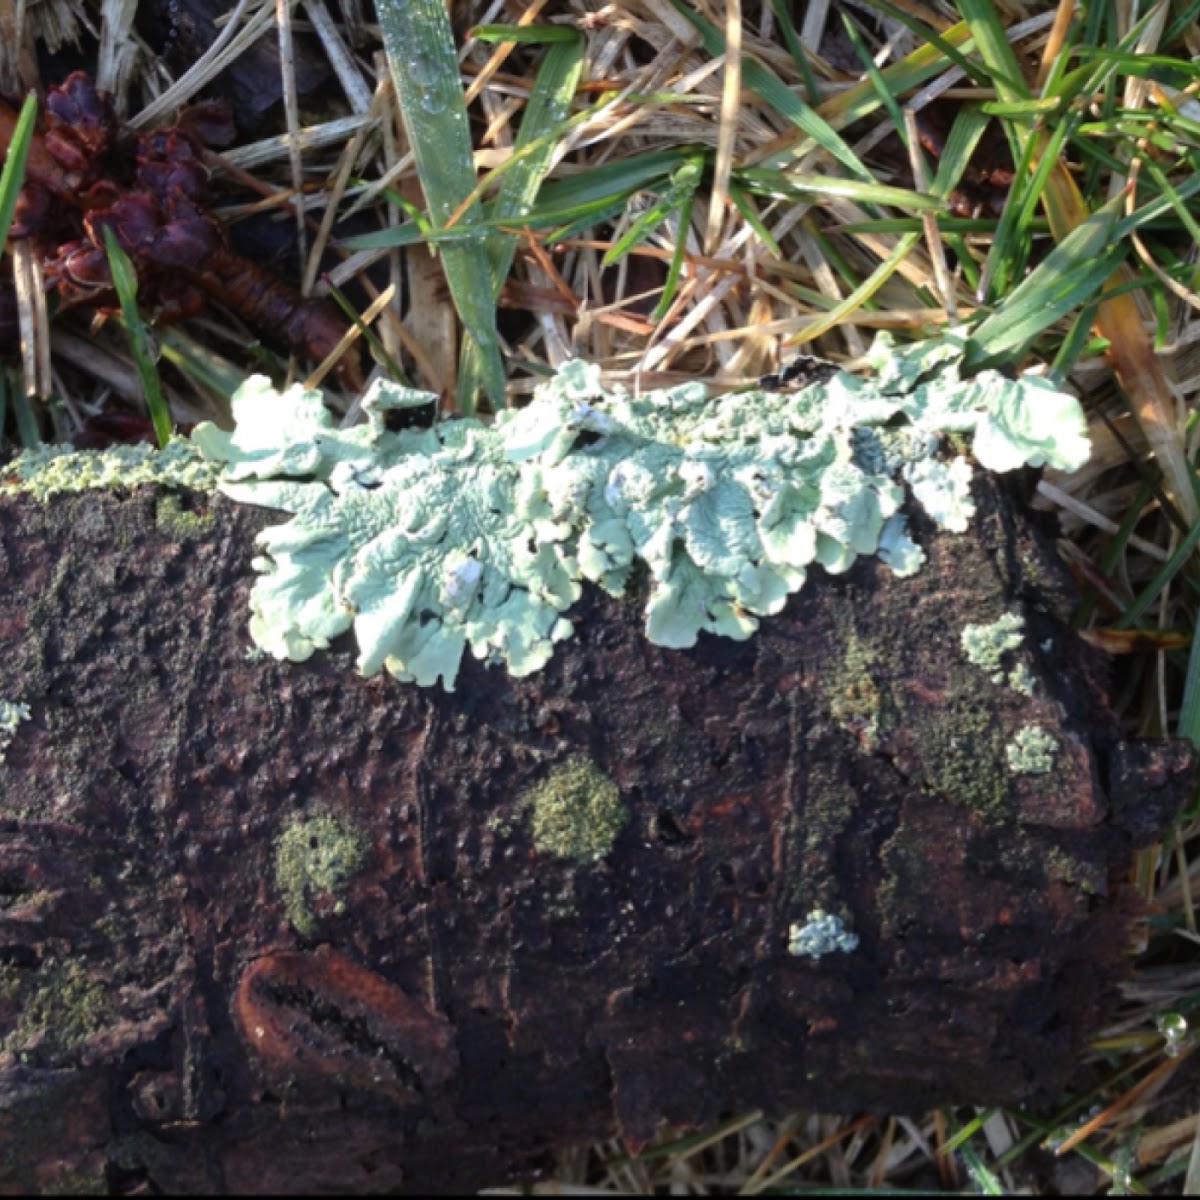 Pale Shield Lichen